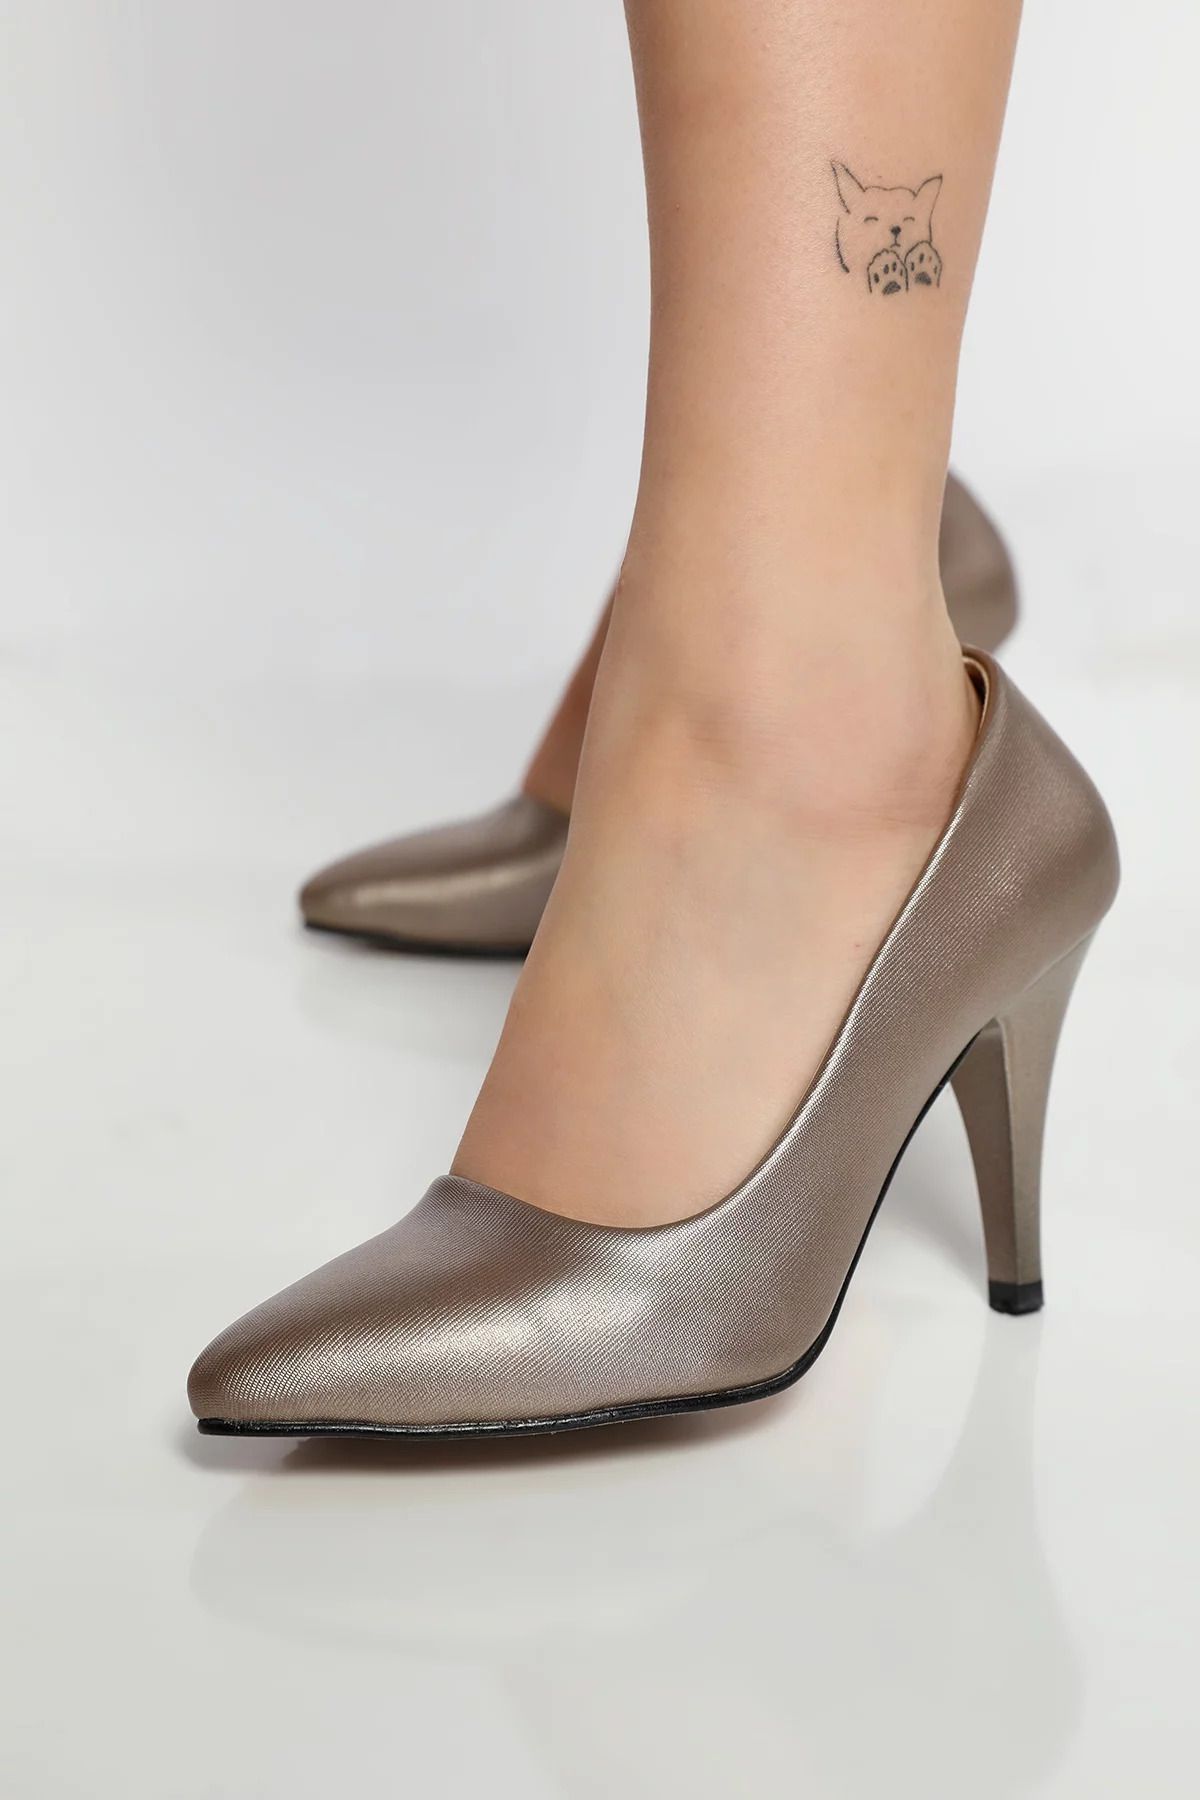 Julude Bronz Kadın Topuklu Ayakkabı